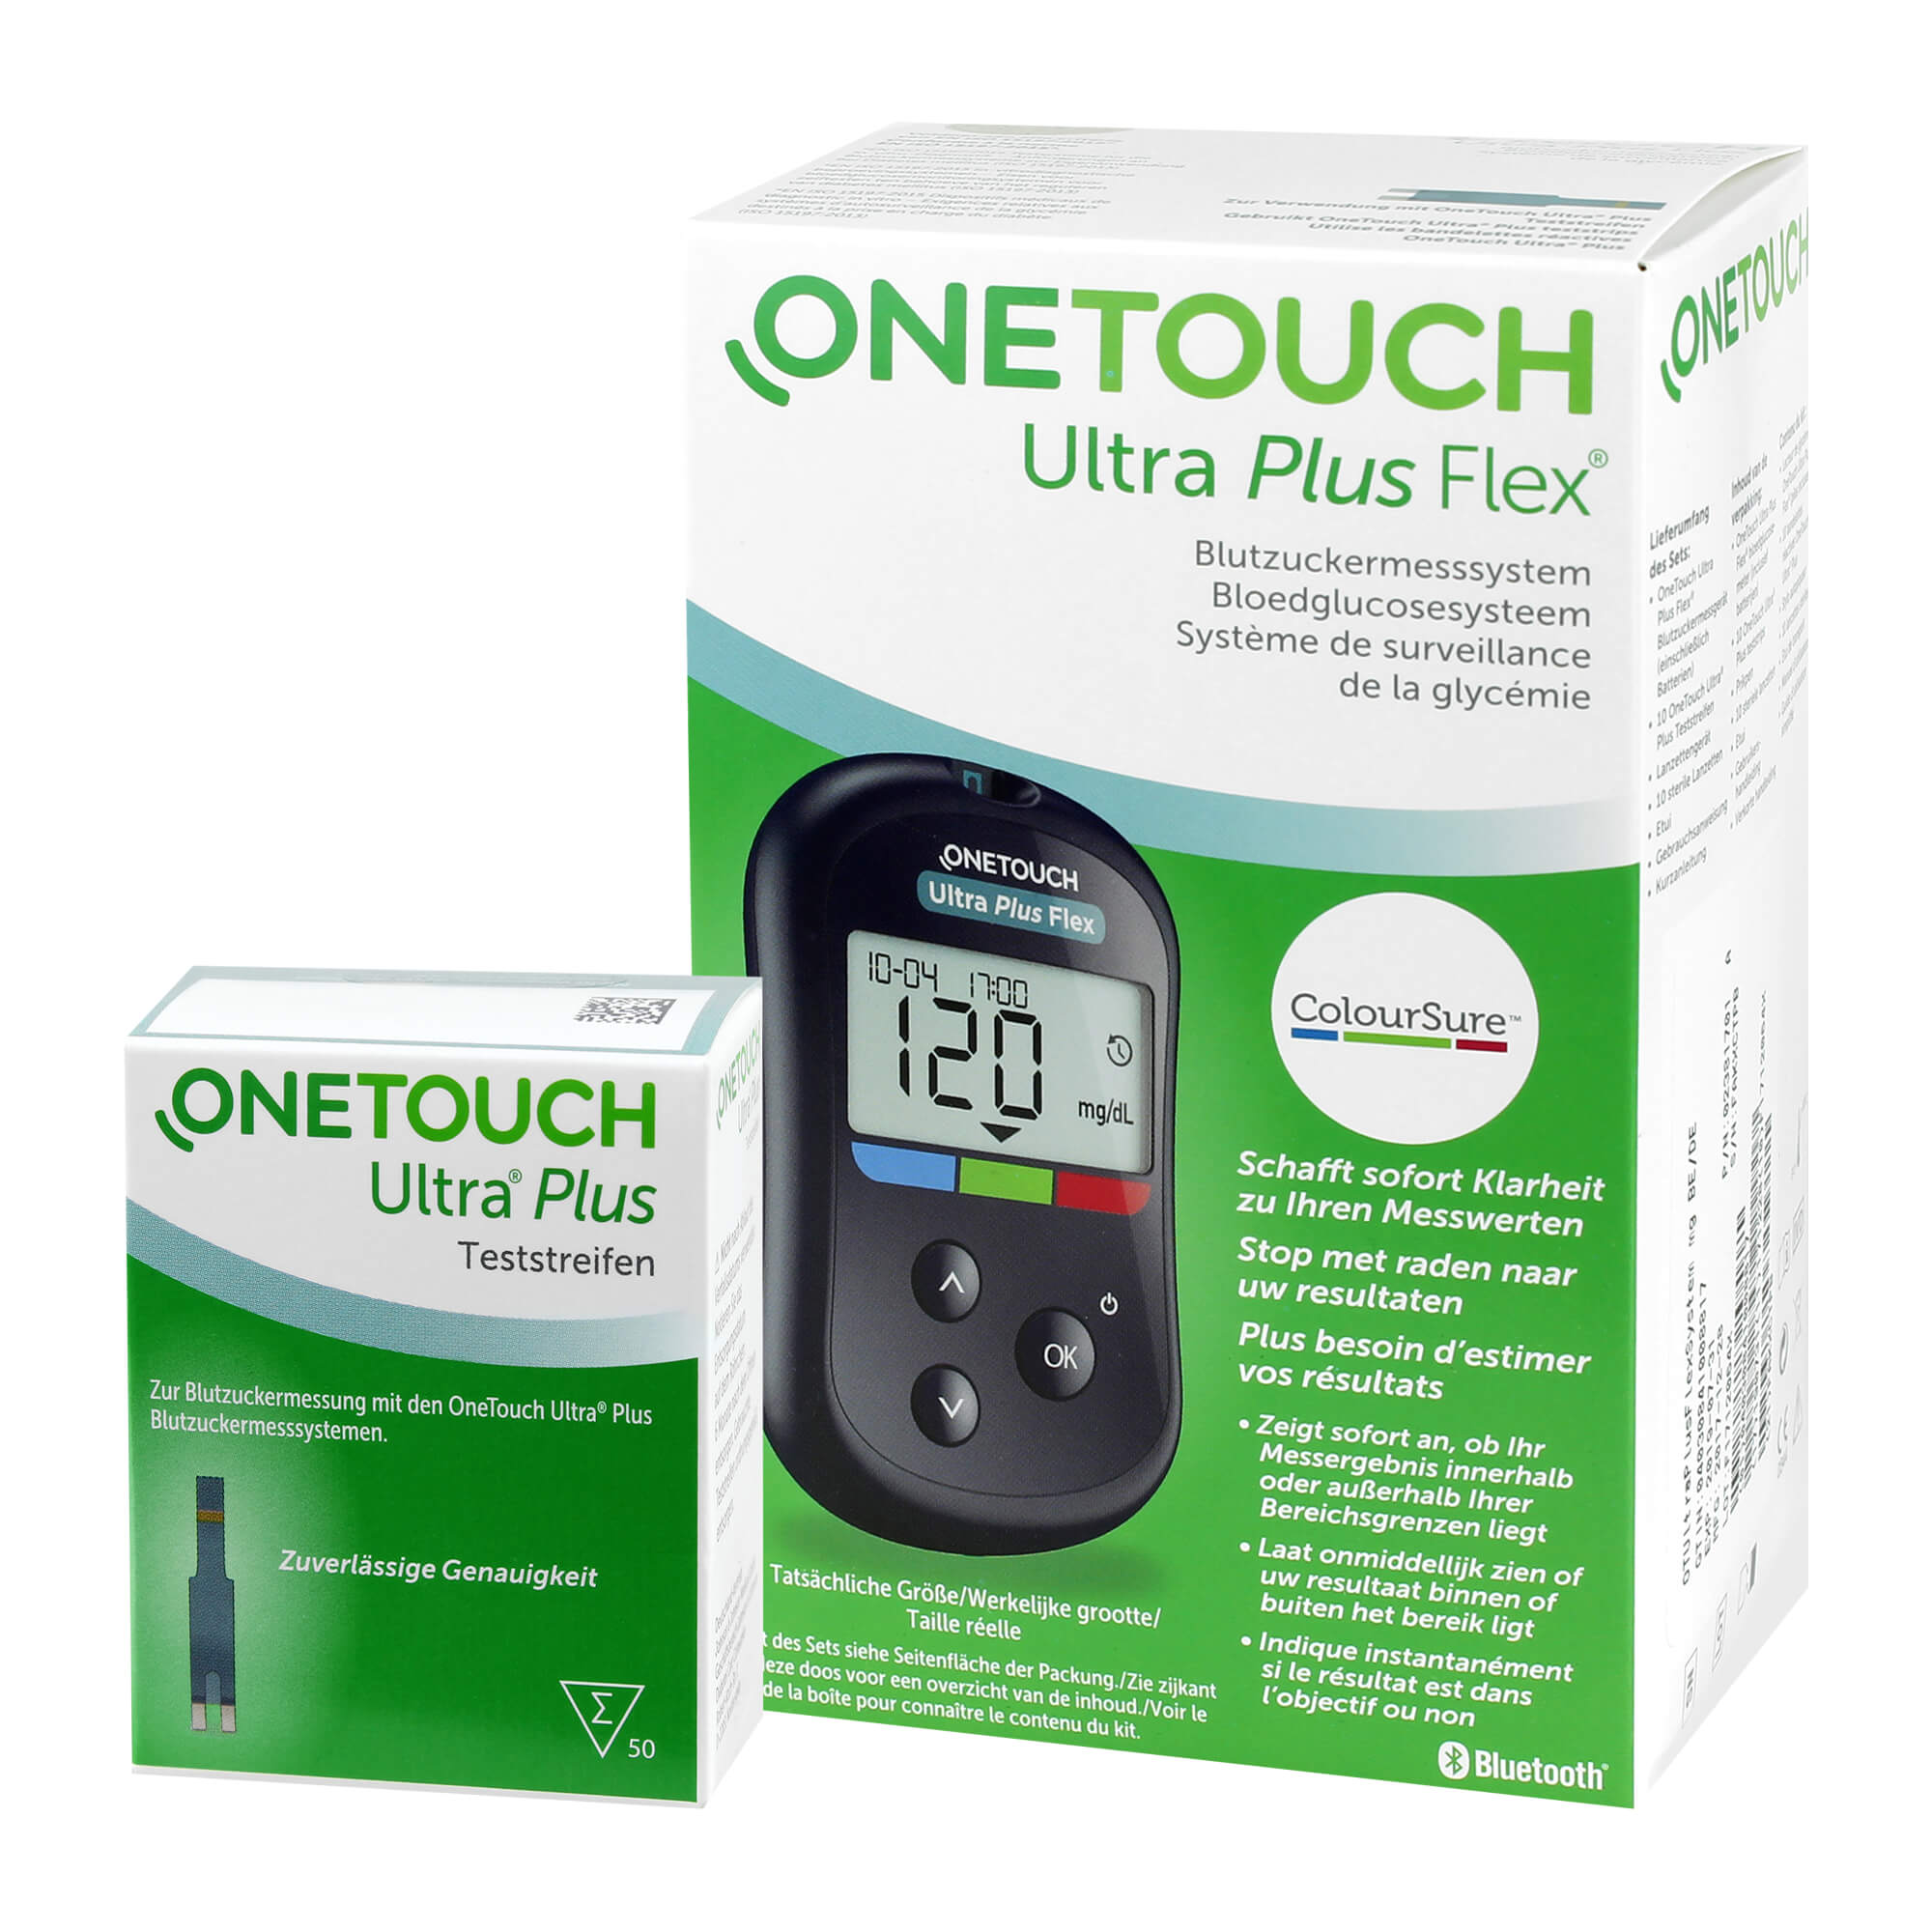 Das Vorteilsset besteht aus: One Touch Ultra Plus Flex Blutzuckermessgerät mg/dl + OneTouch Ultra Plus Blutzuckerteststreifen